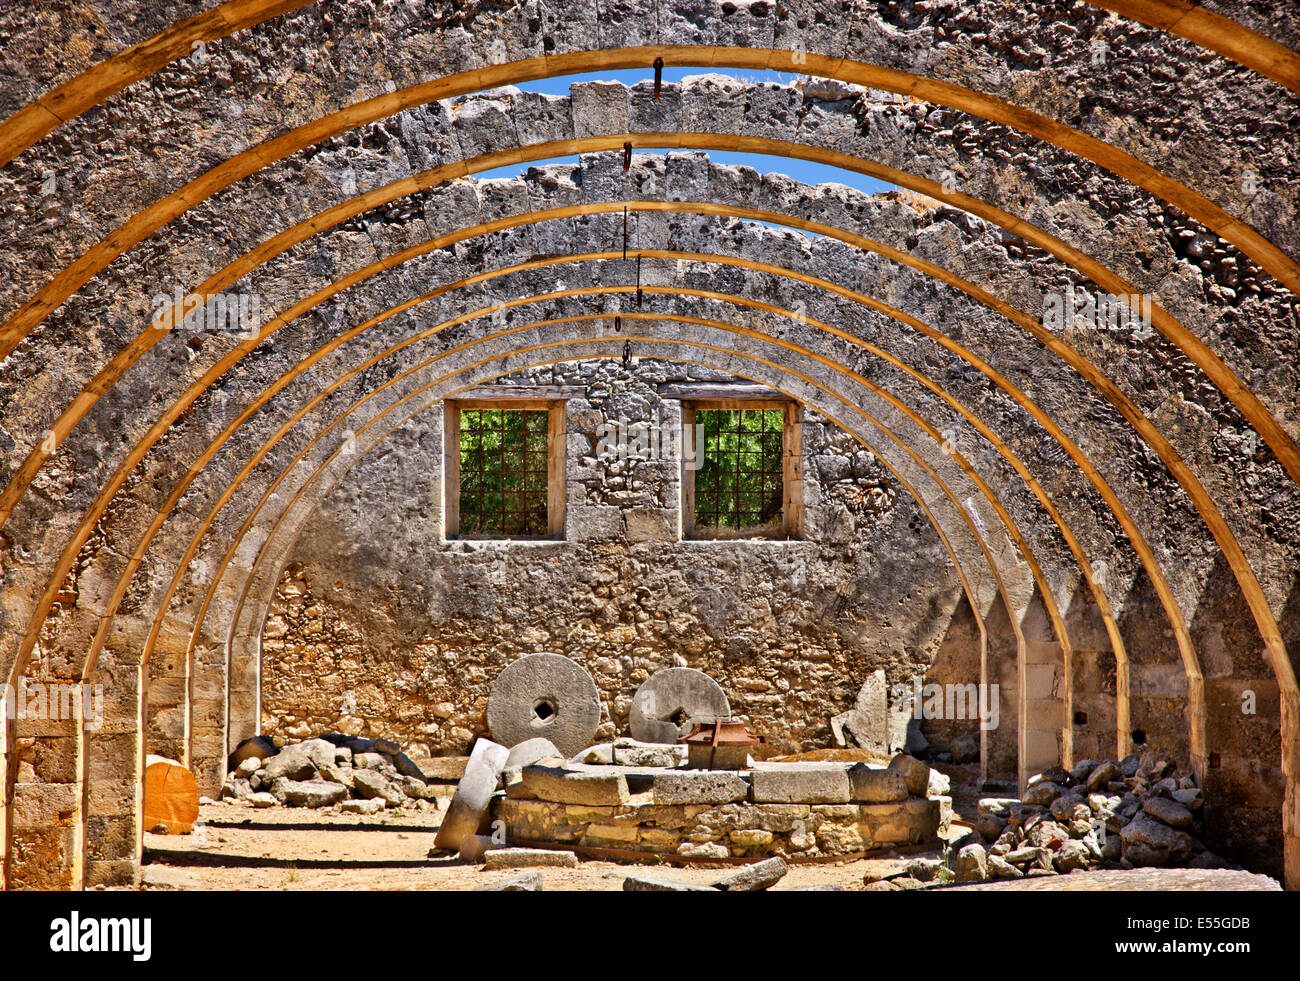 Schöne Bögen in der alten Ölmühle am Kloster Agios Georgios (Heiliger Georg), Karidi, Apokoronas, Chania, Kreta, Griechenland. Stockfoto